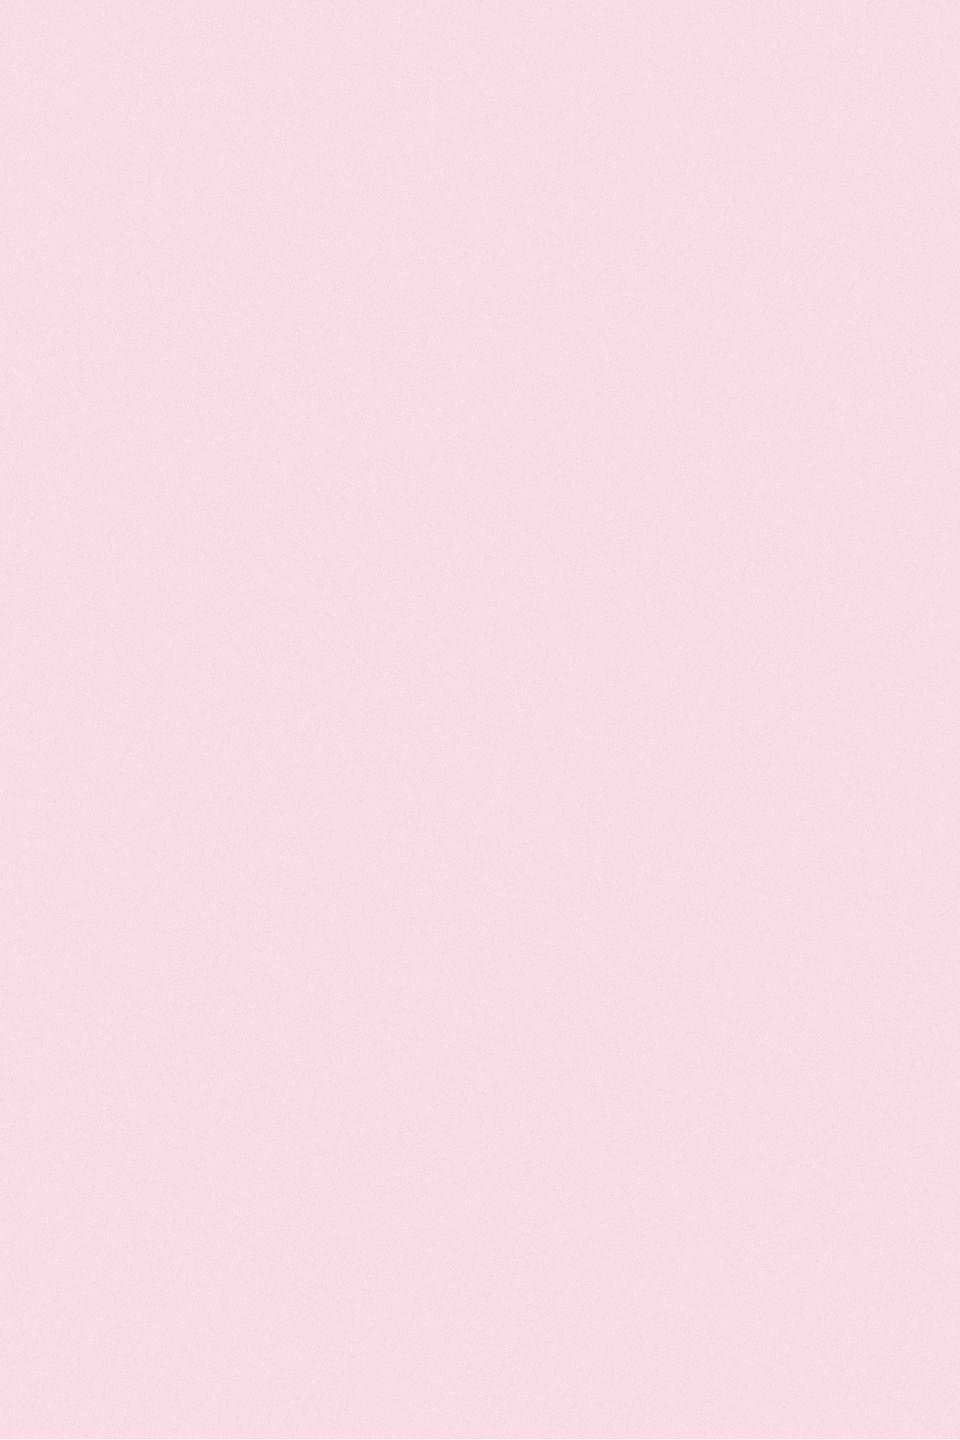 960x1440 Nền màu hồng tươi dễ thương, Nền màu hồng, Màu đồng nhất, Hình nền đơn giản để tải xuống miễn phí